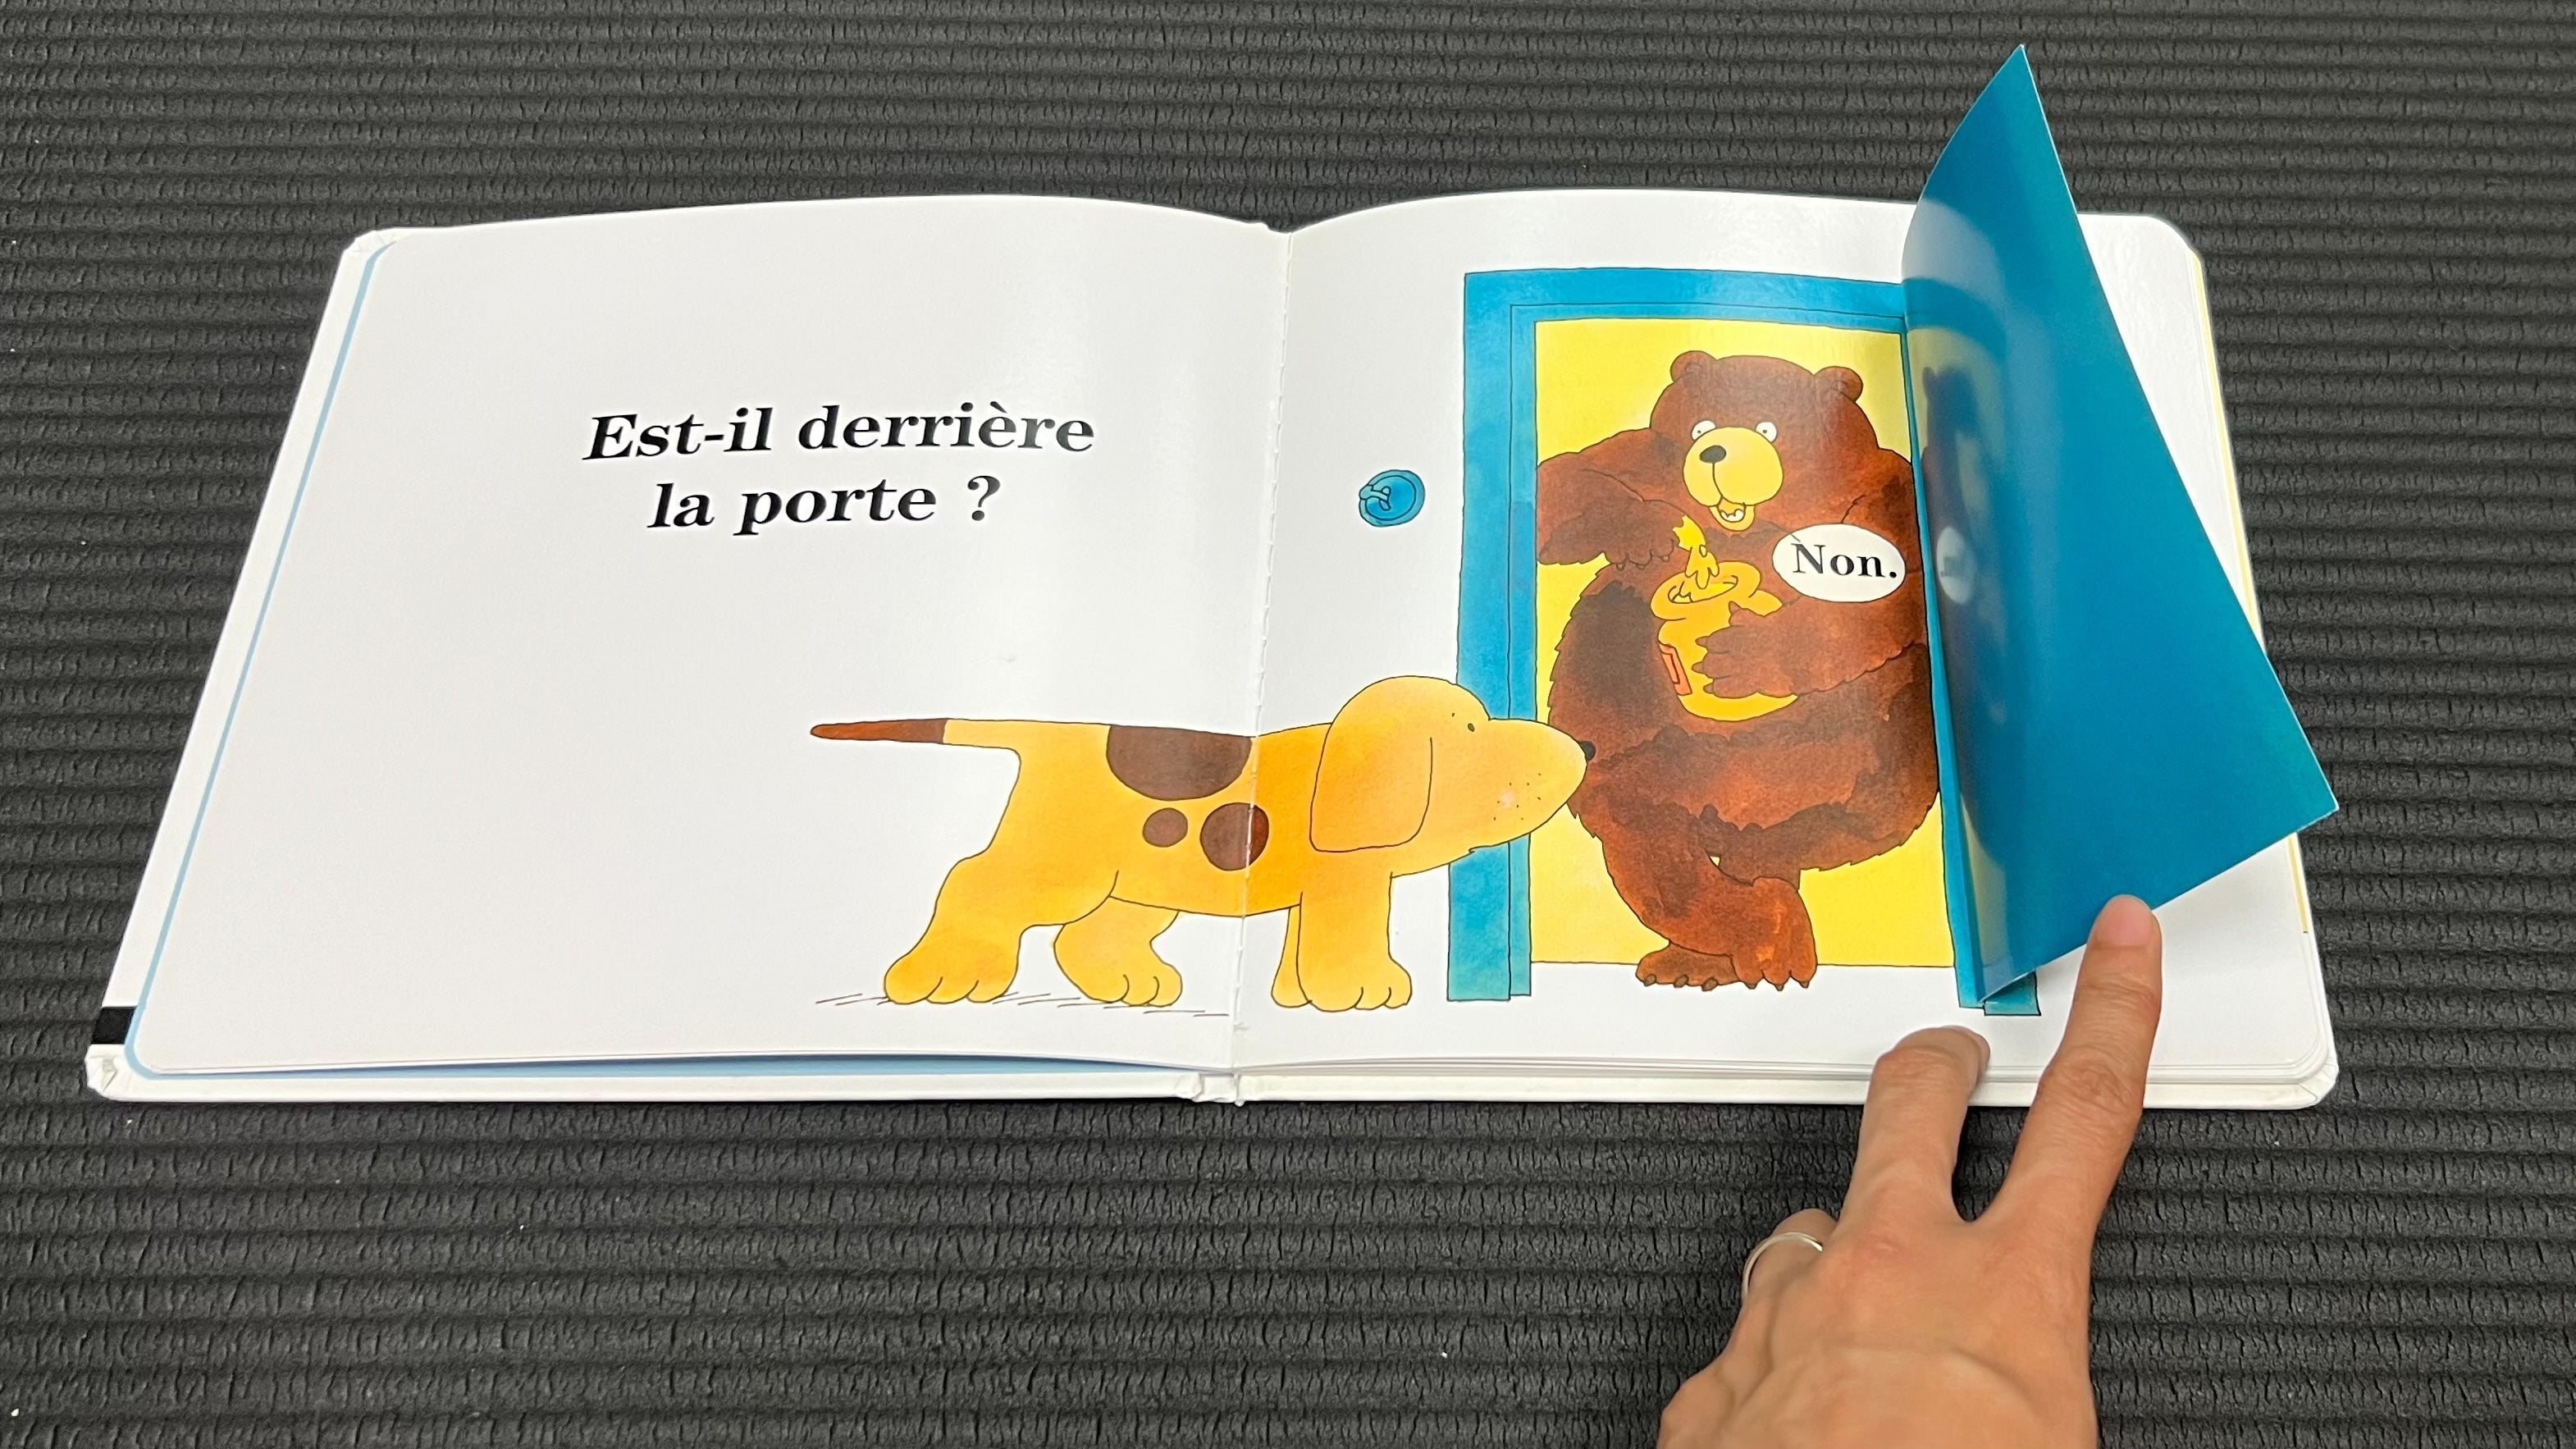 法文精裝立體童書 Où est Spot, mon petit chien ? 我的小狗 Spot 在哪裡？